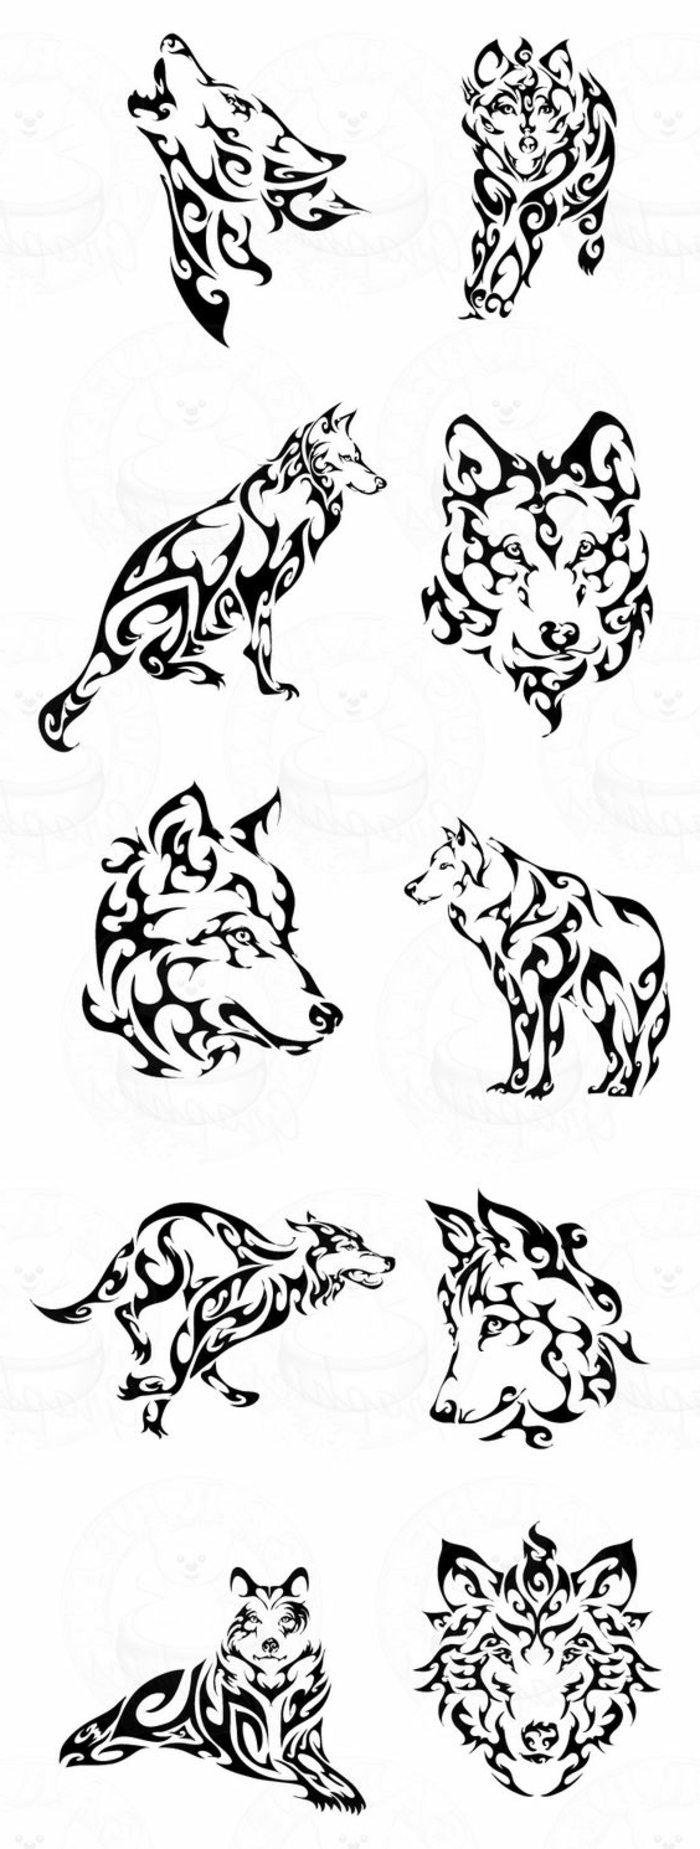 törzsi farkas - itt nagyon különböző ötleteket találsz a nagy törzsi farkas tetoválásért